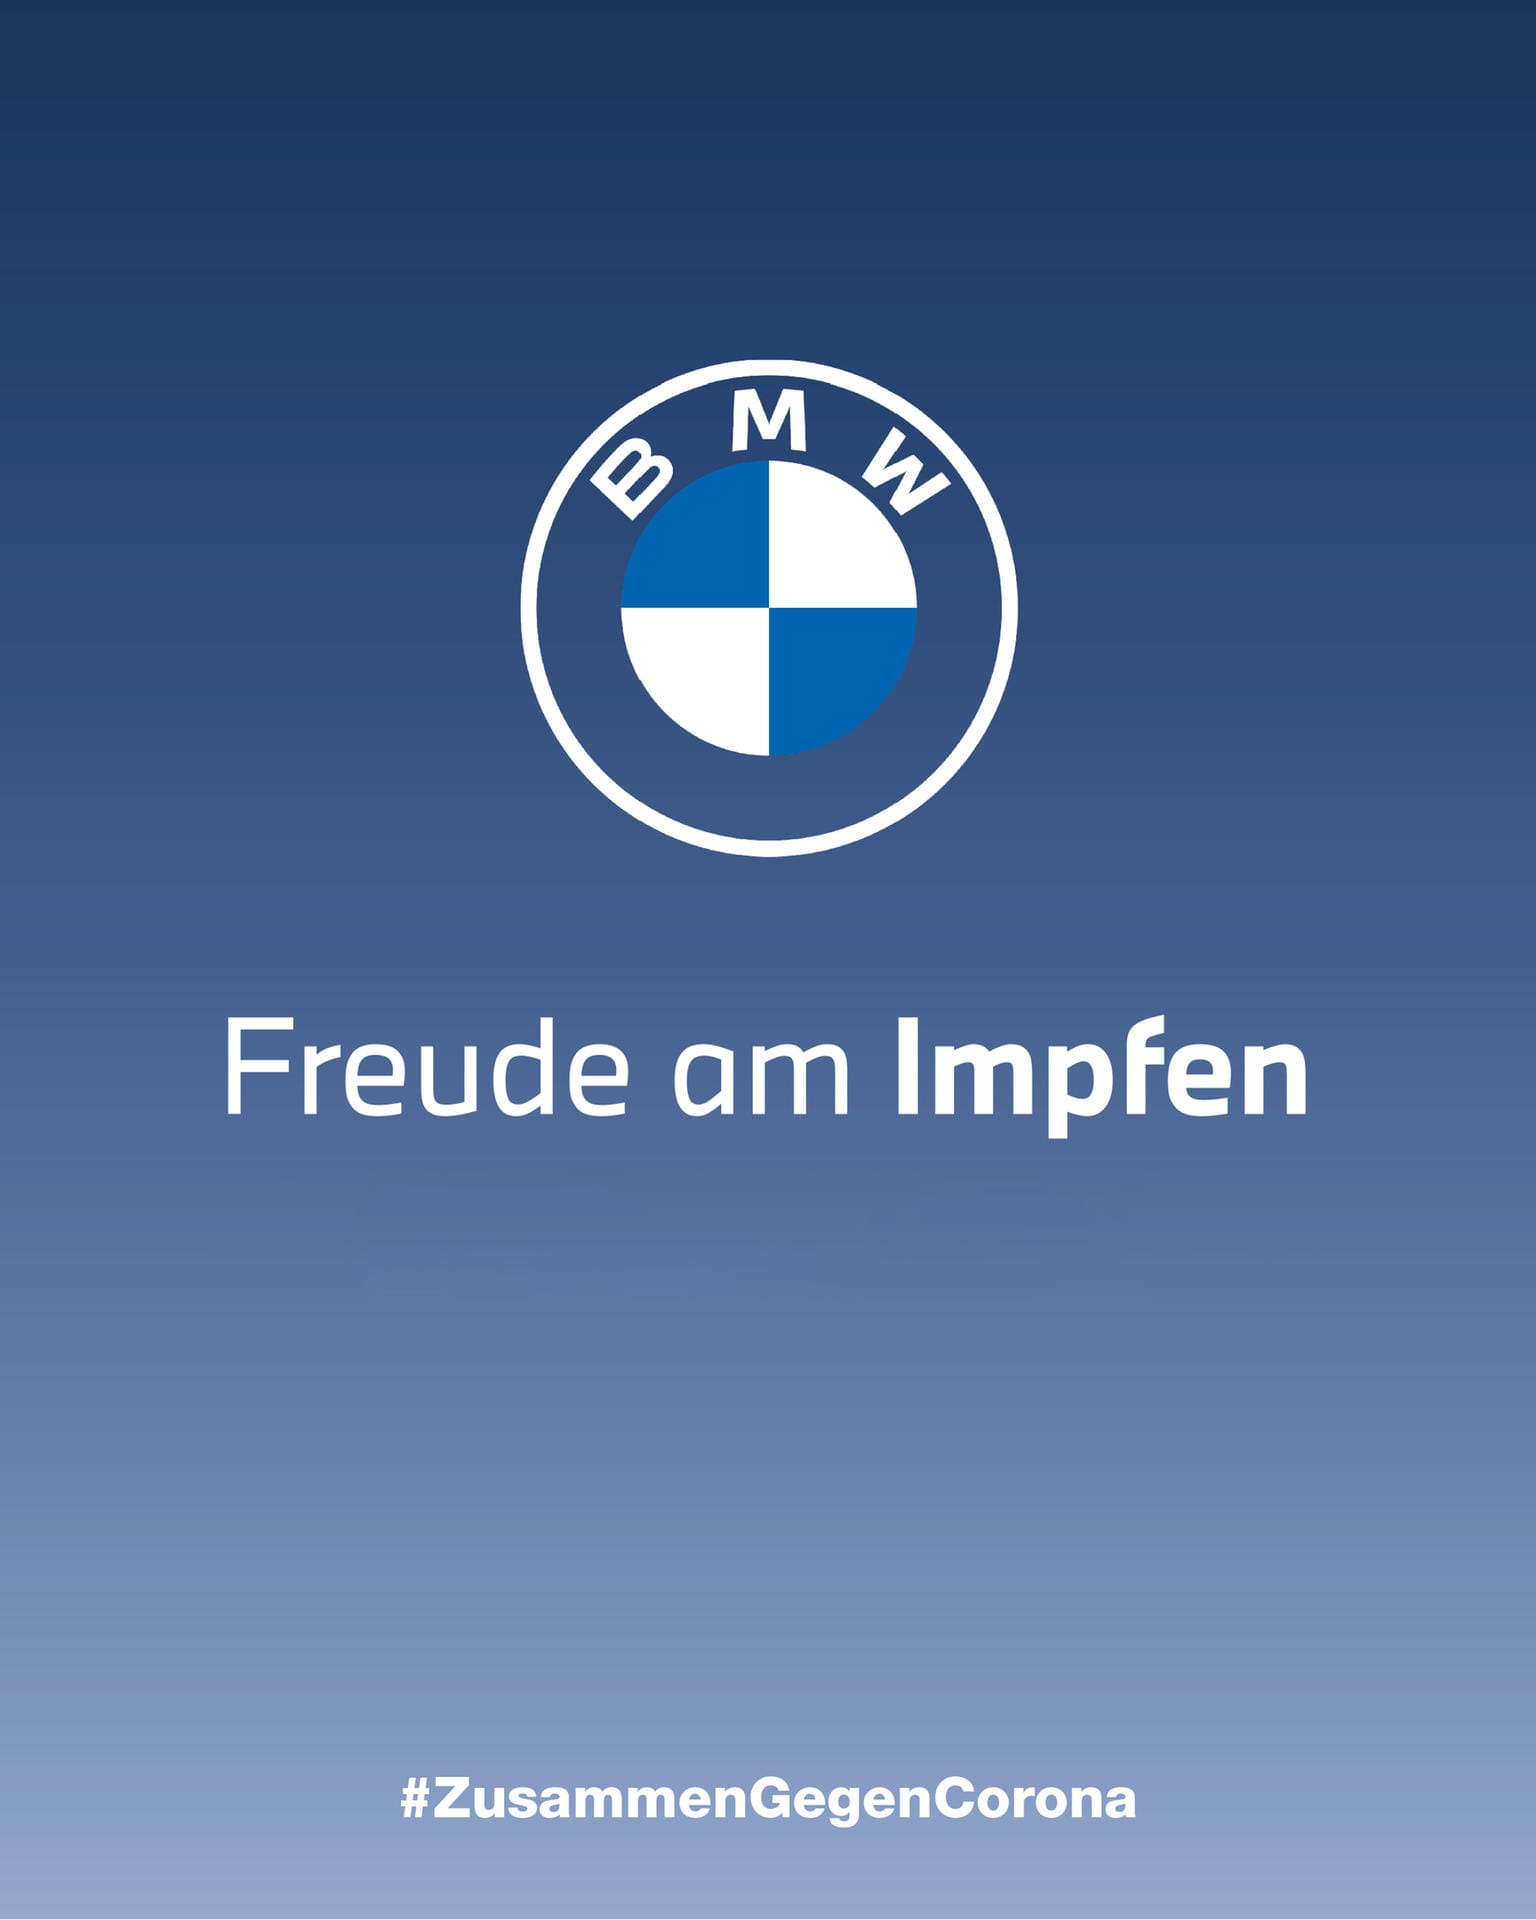 BMW wirbt mit dem Spruch "Freude am Impfen".